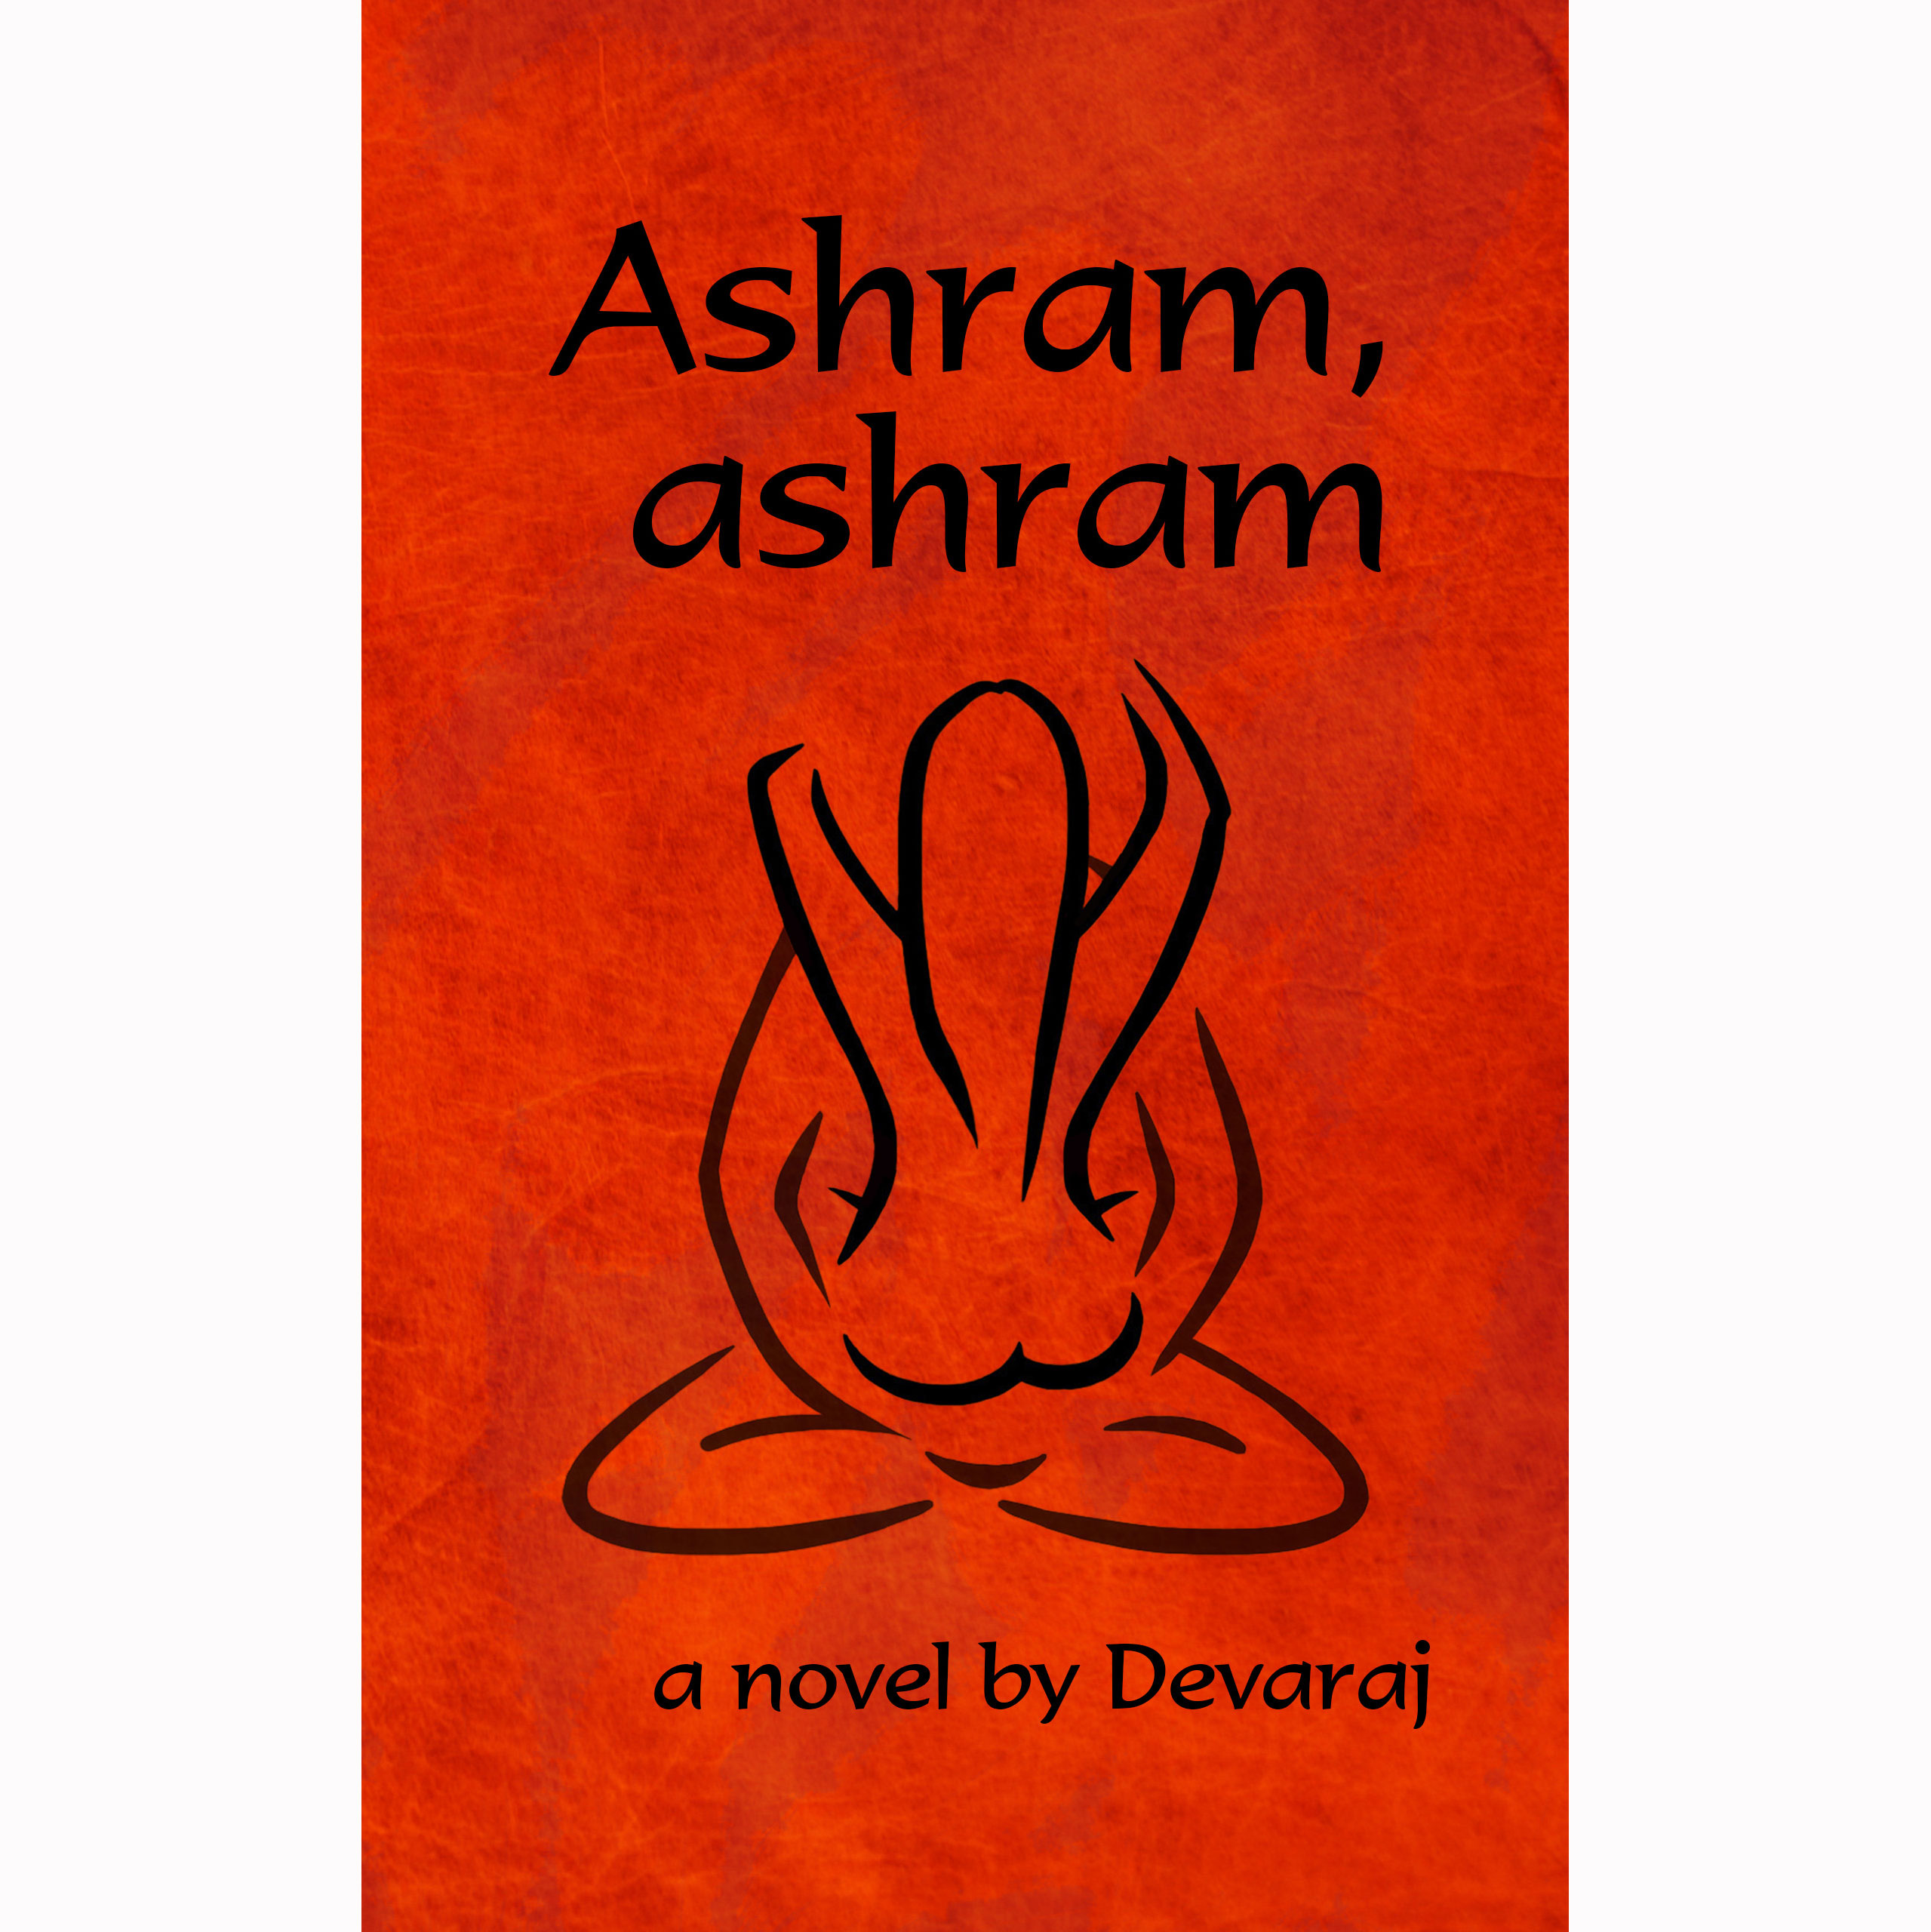 Ashram, Ashram (novel, 2017)